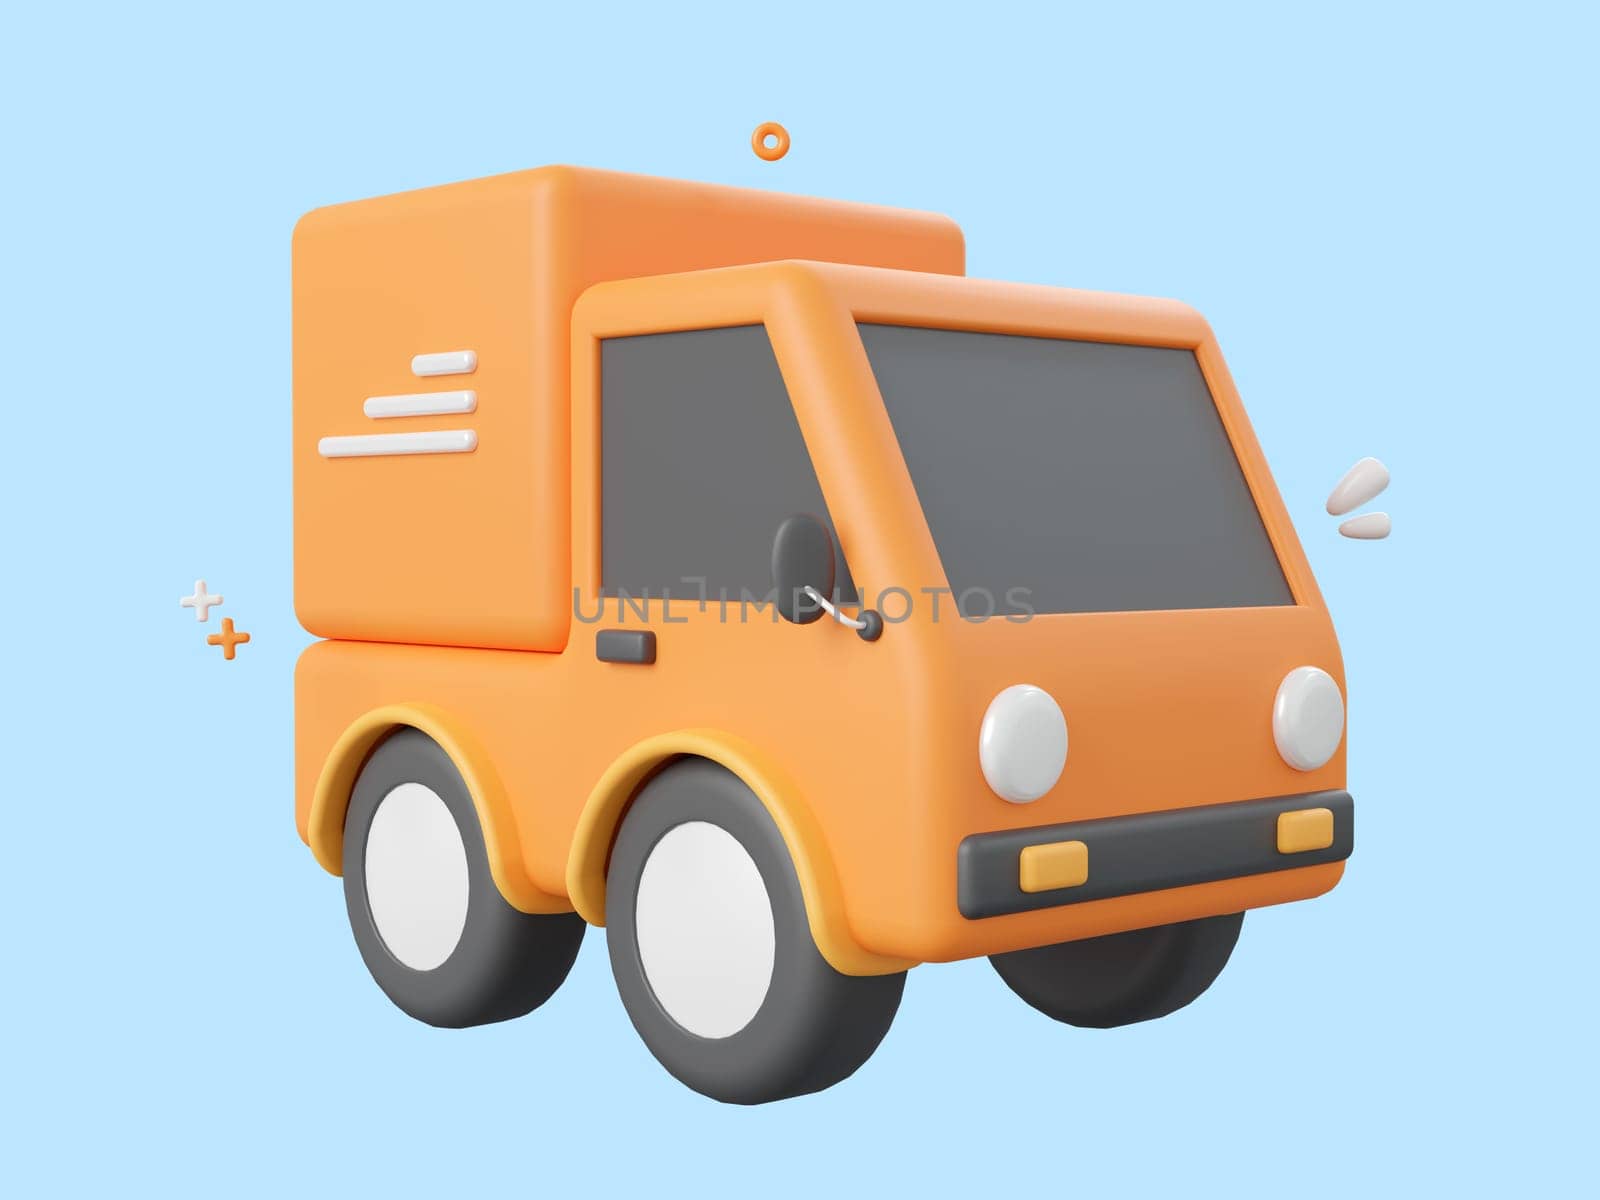 3d cartoon design illustration of Delivery truck service. by nutzchotwarut